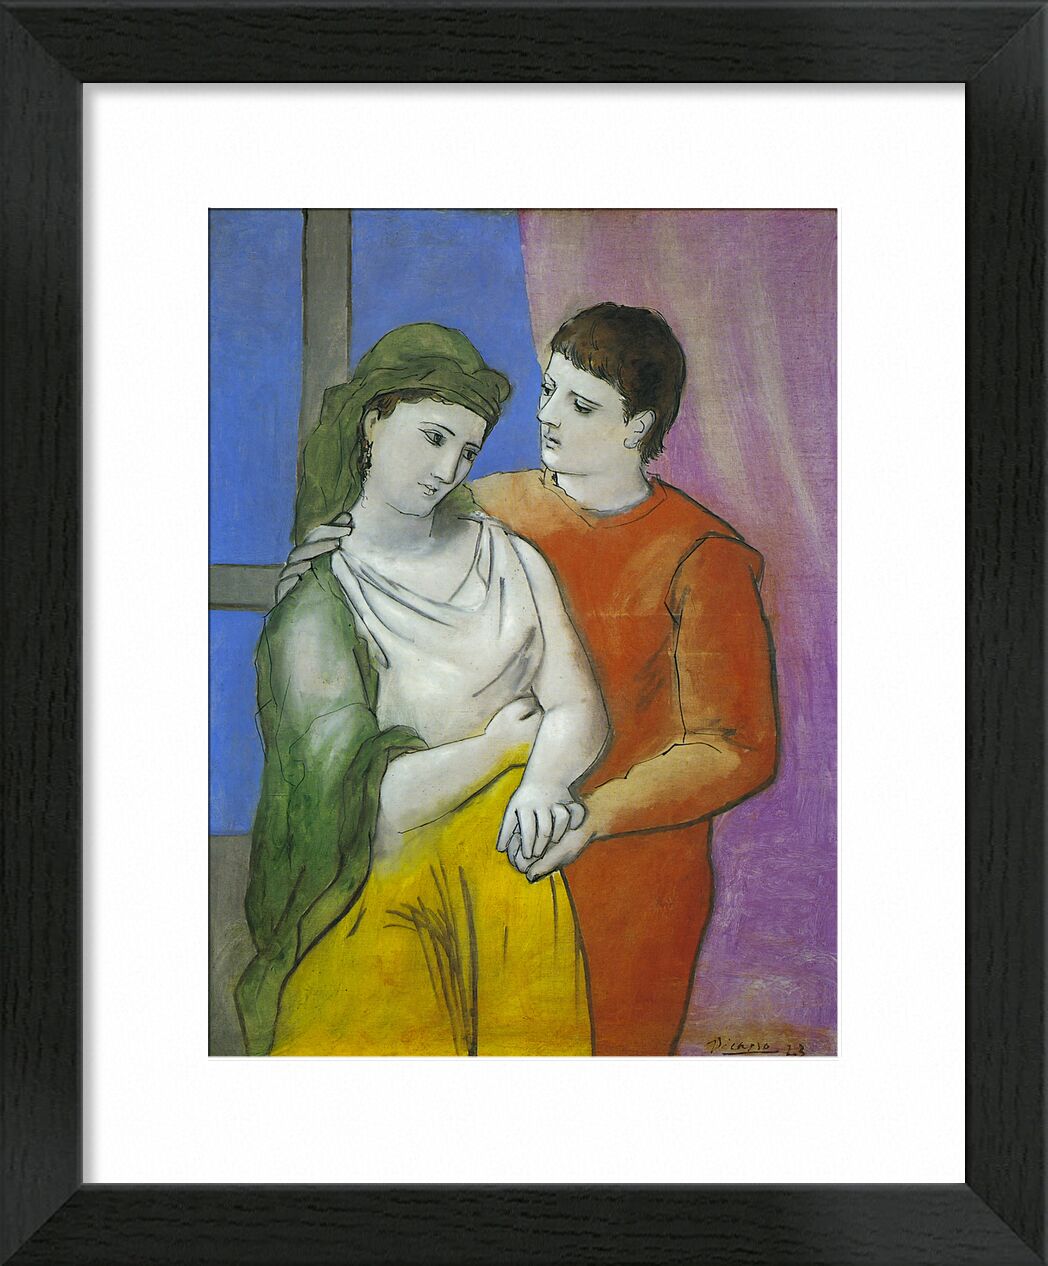 The Lovers - Picasso von Bildende Kunst, Prodi Art, Liebhaber, Malerei, Zeichnung, Liebe, Picasso